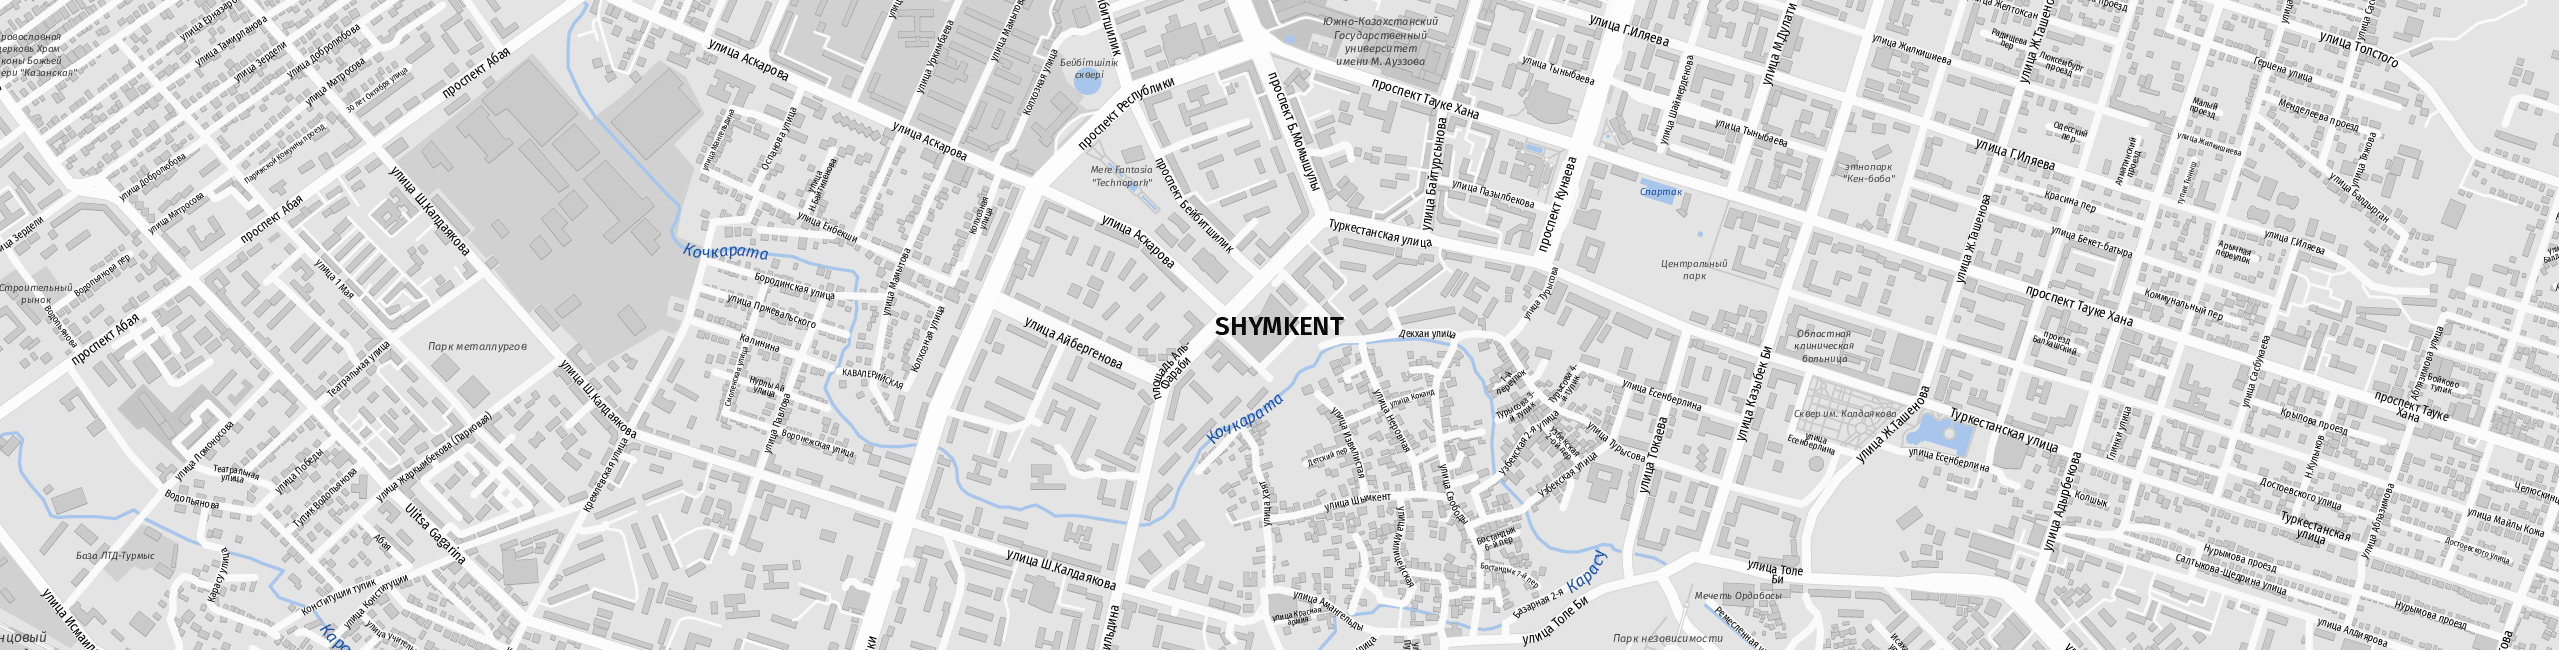 Stadtplan Shymkent zum Downloaden.